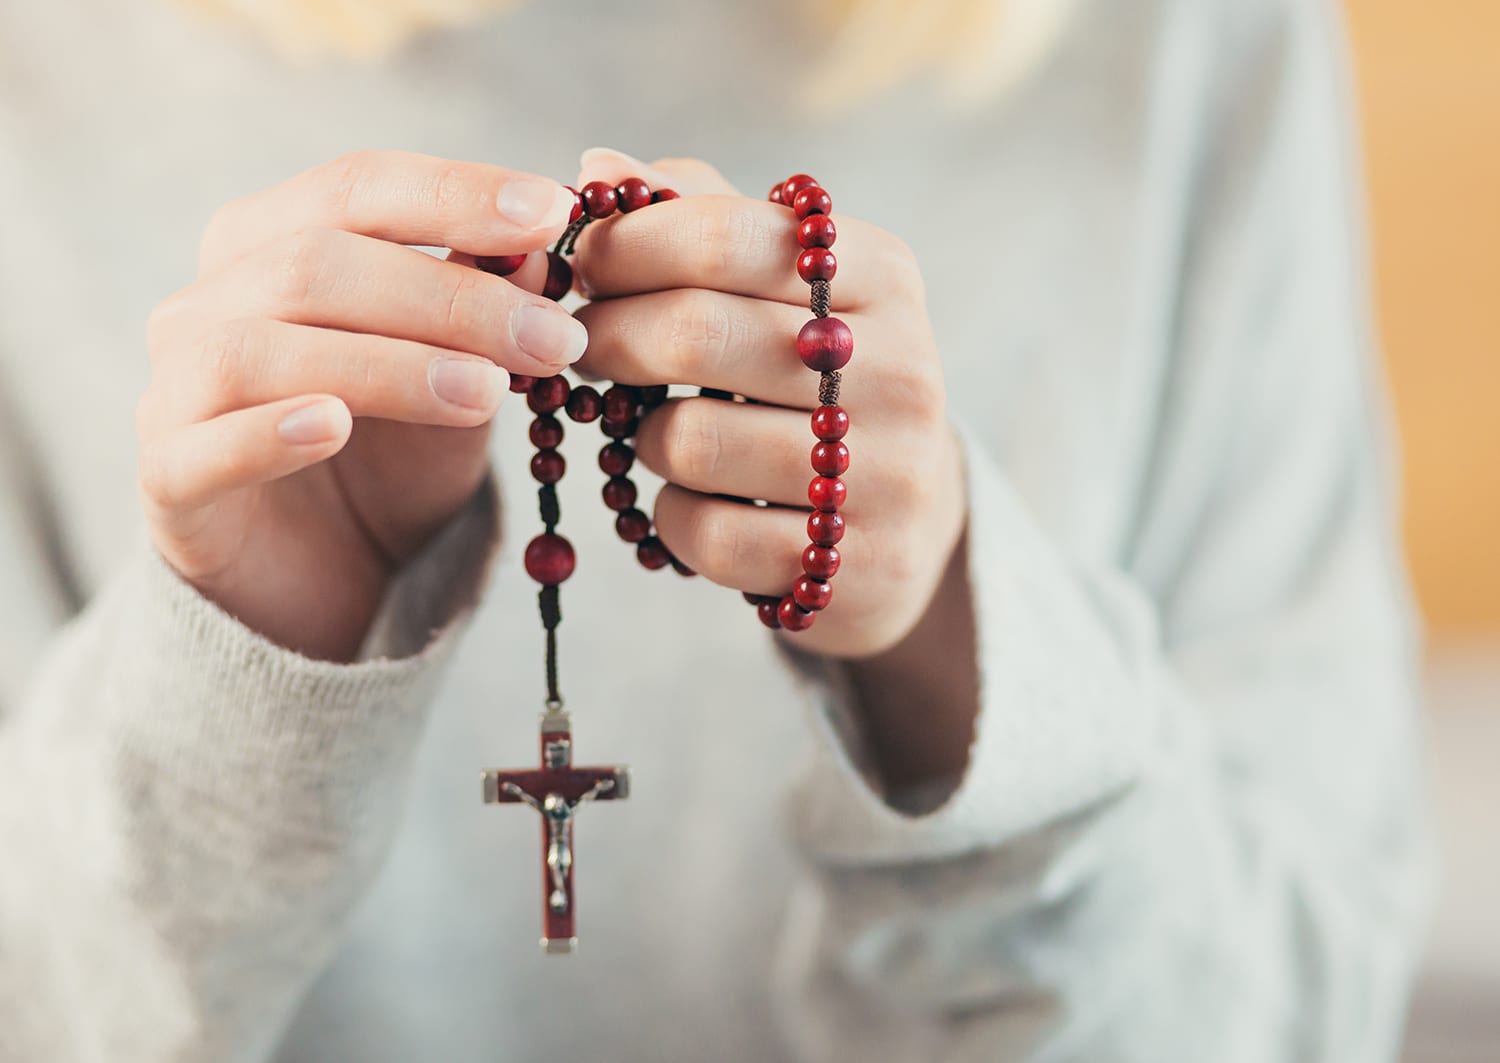 pray the rosary